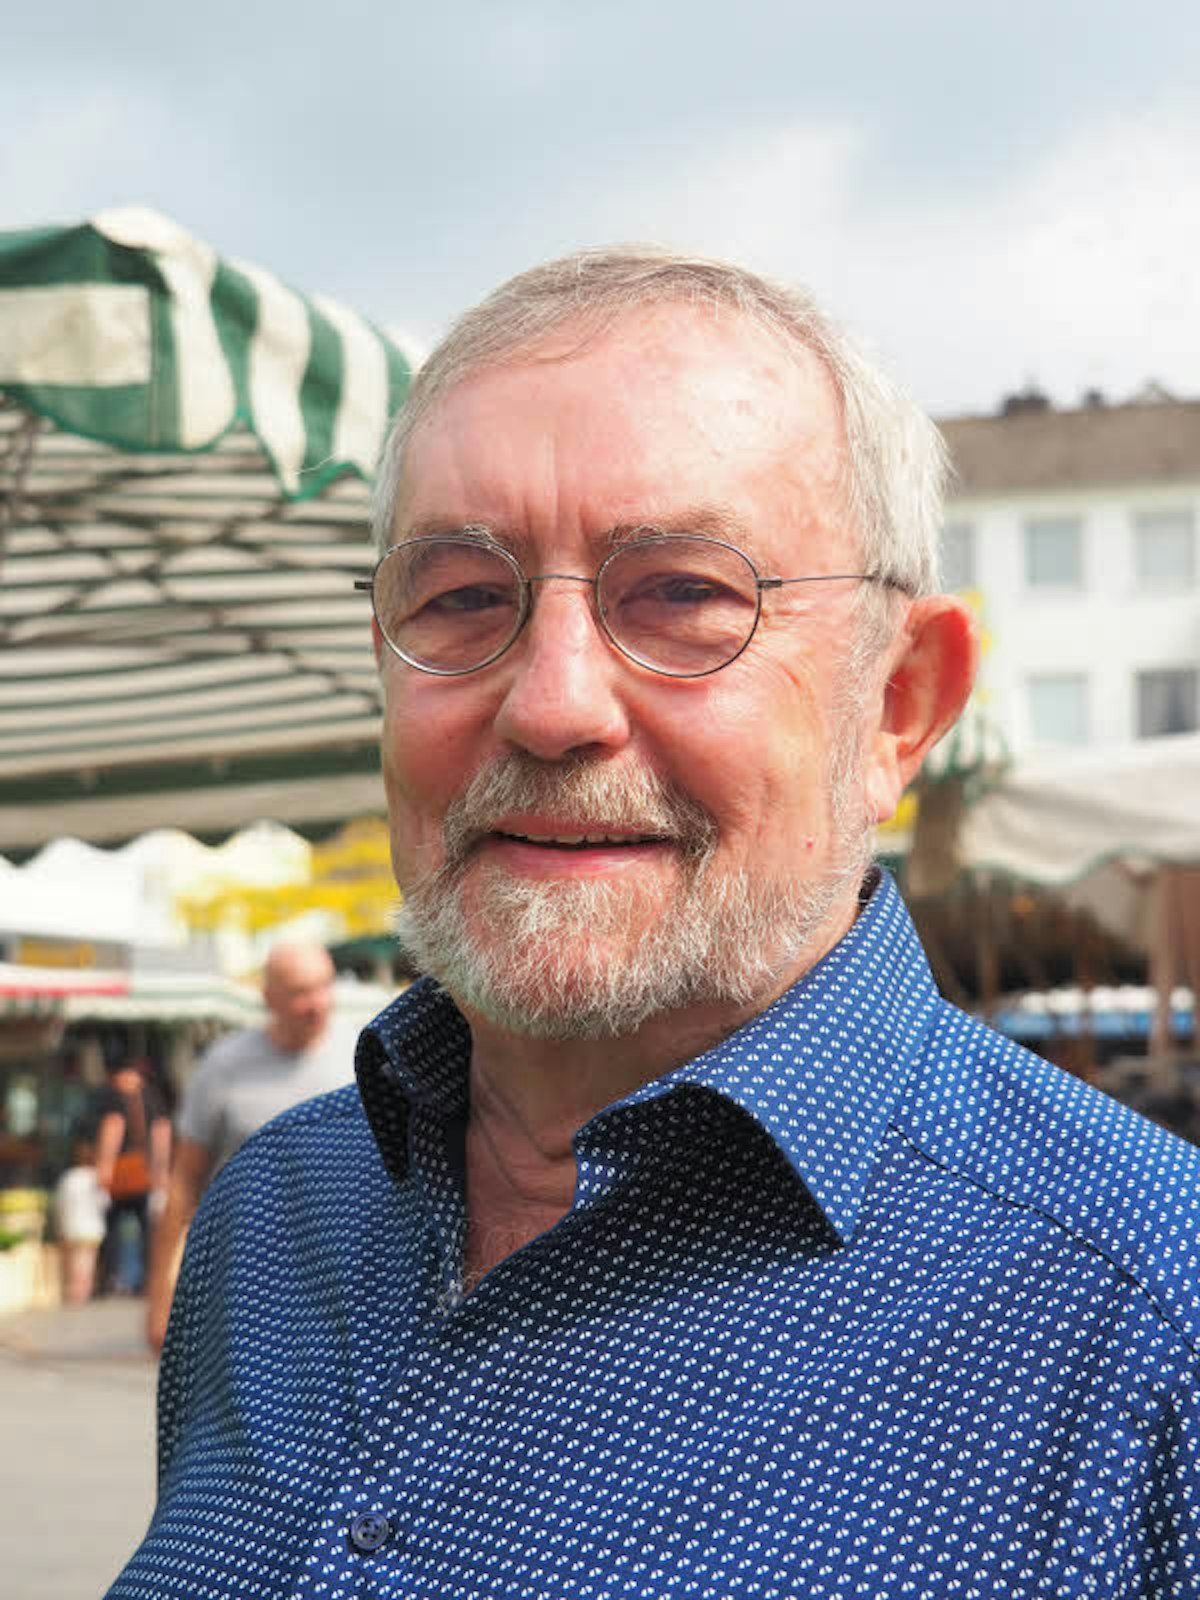 Horst Schneider